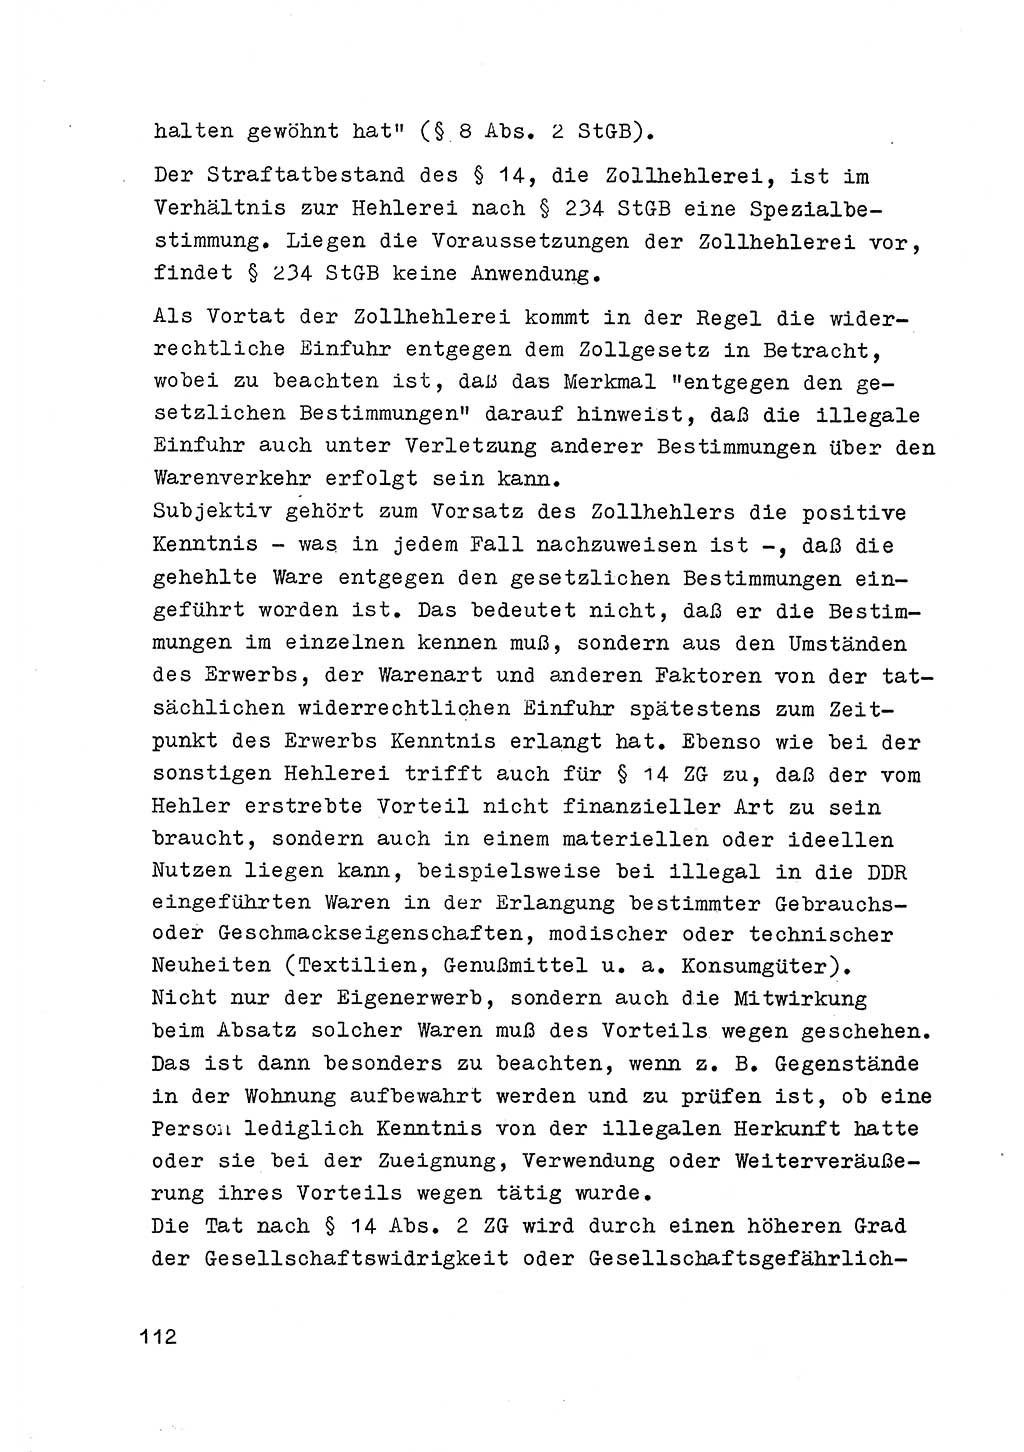 Strafrecht der DDR (Deutsche Demokratische Republik), Besonderer Teil, Lehrmaterial, Heft 6 1970, Seite 112 (Strafr. DDR BT Lehrmat. H. 6 1970, S. 112)